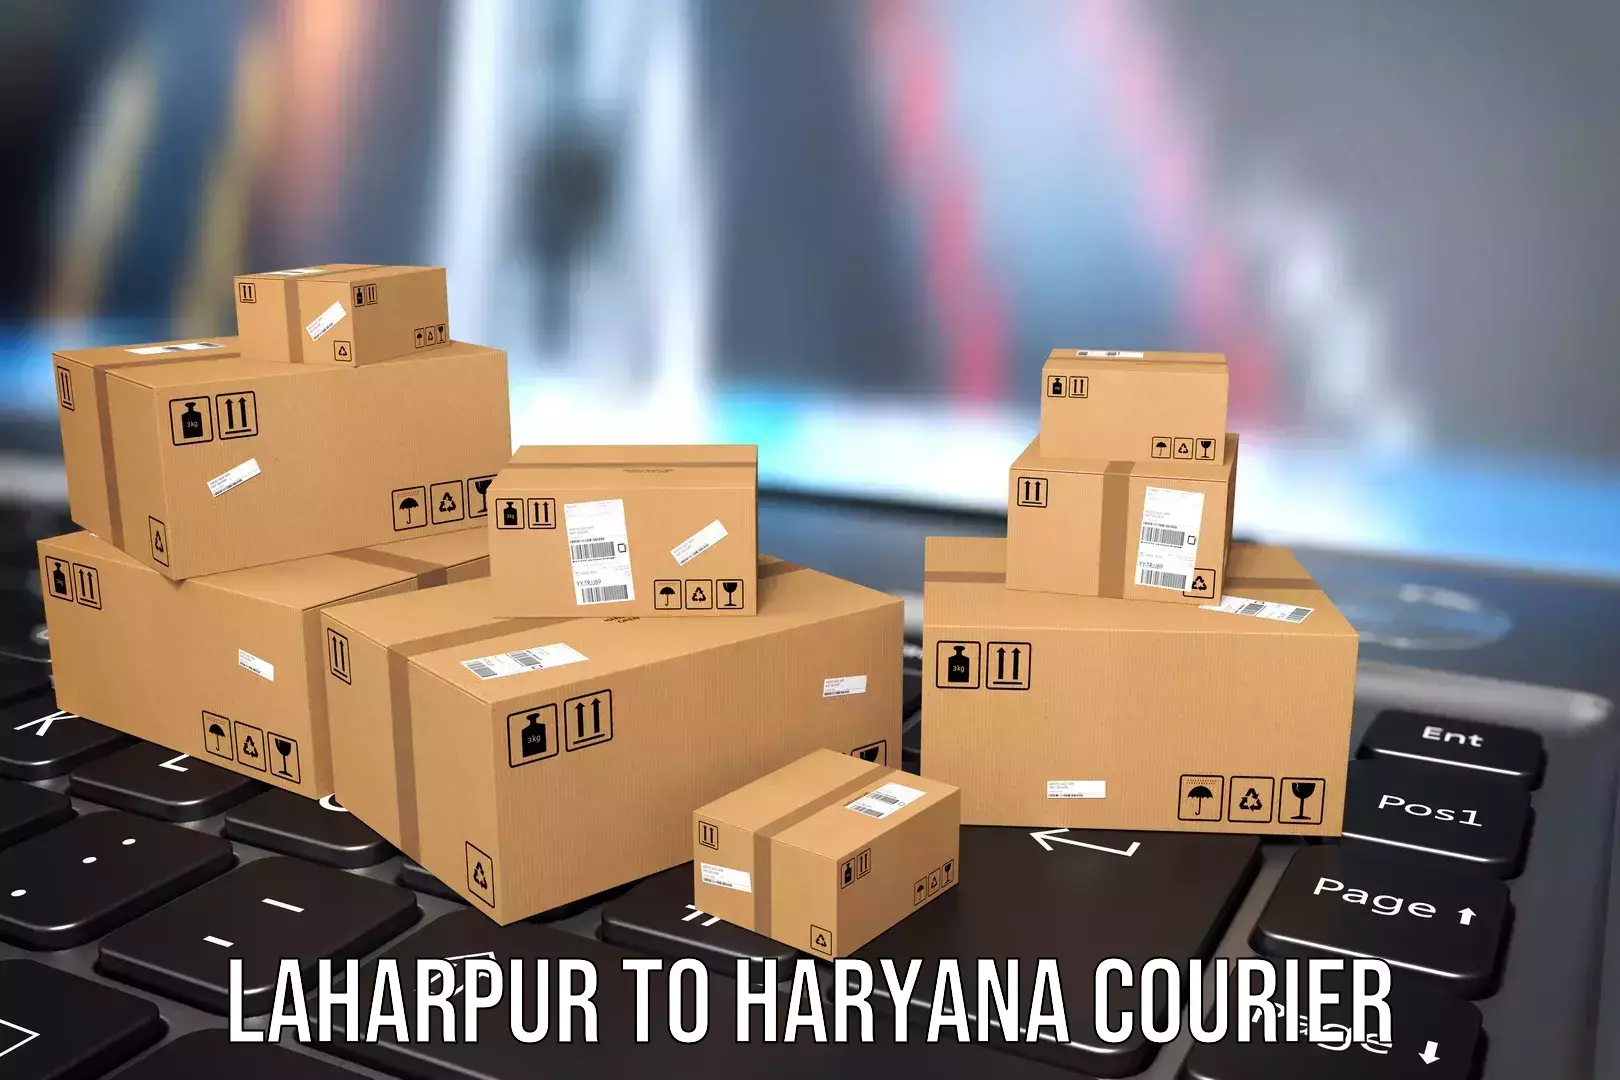 Baggage transport scheduler Laharpur to Hansi